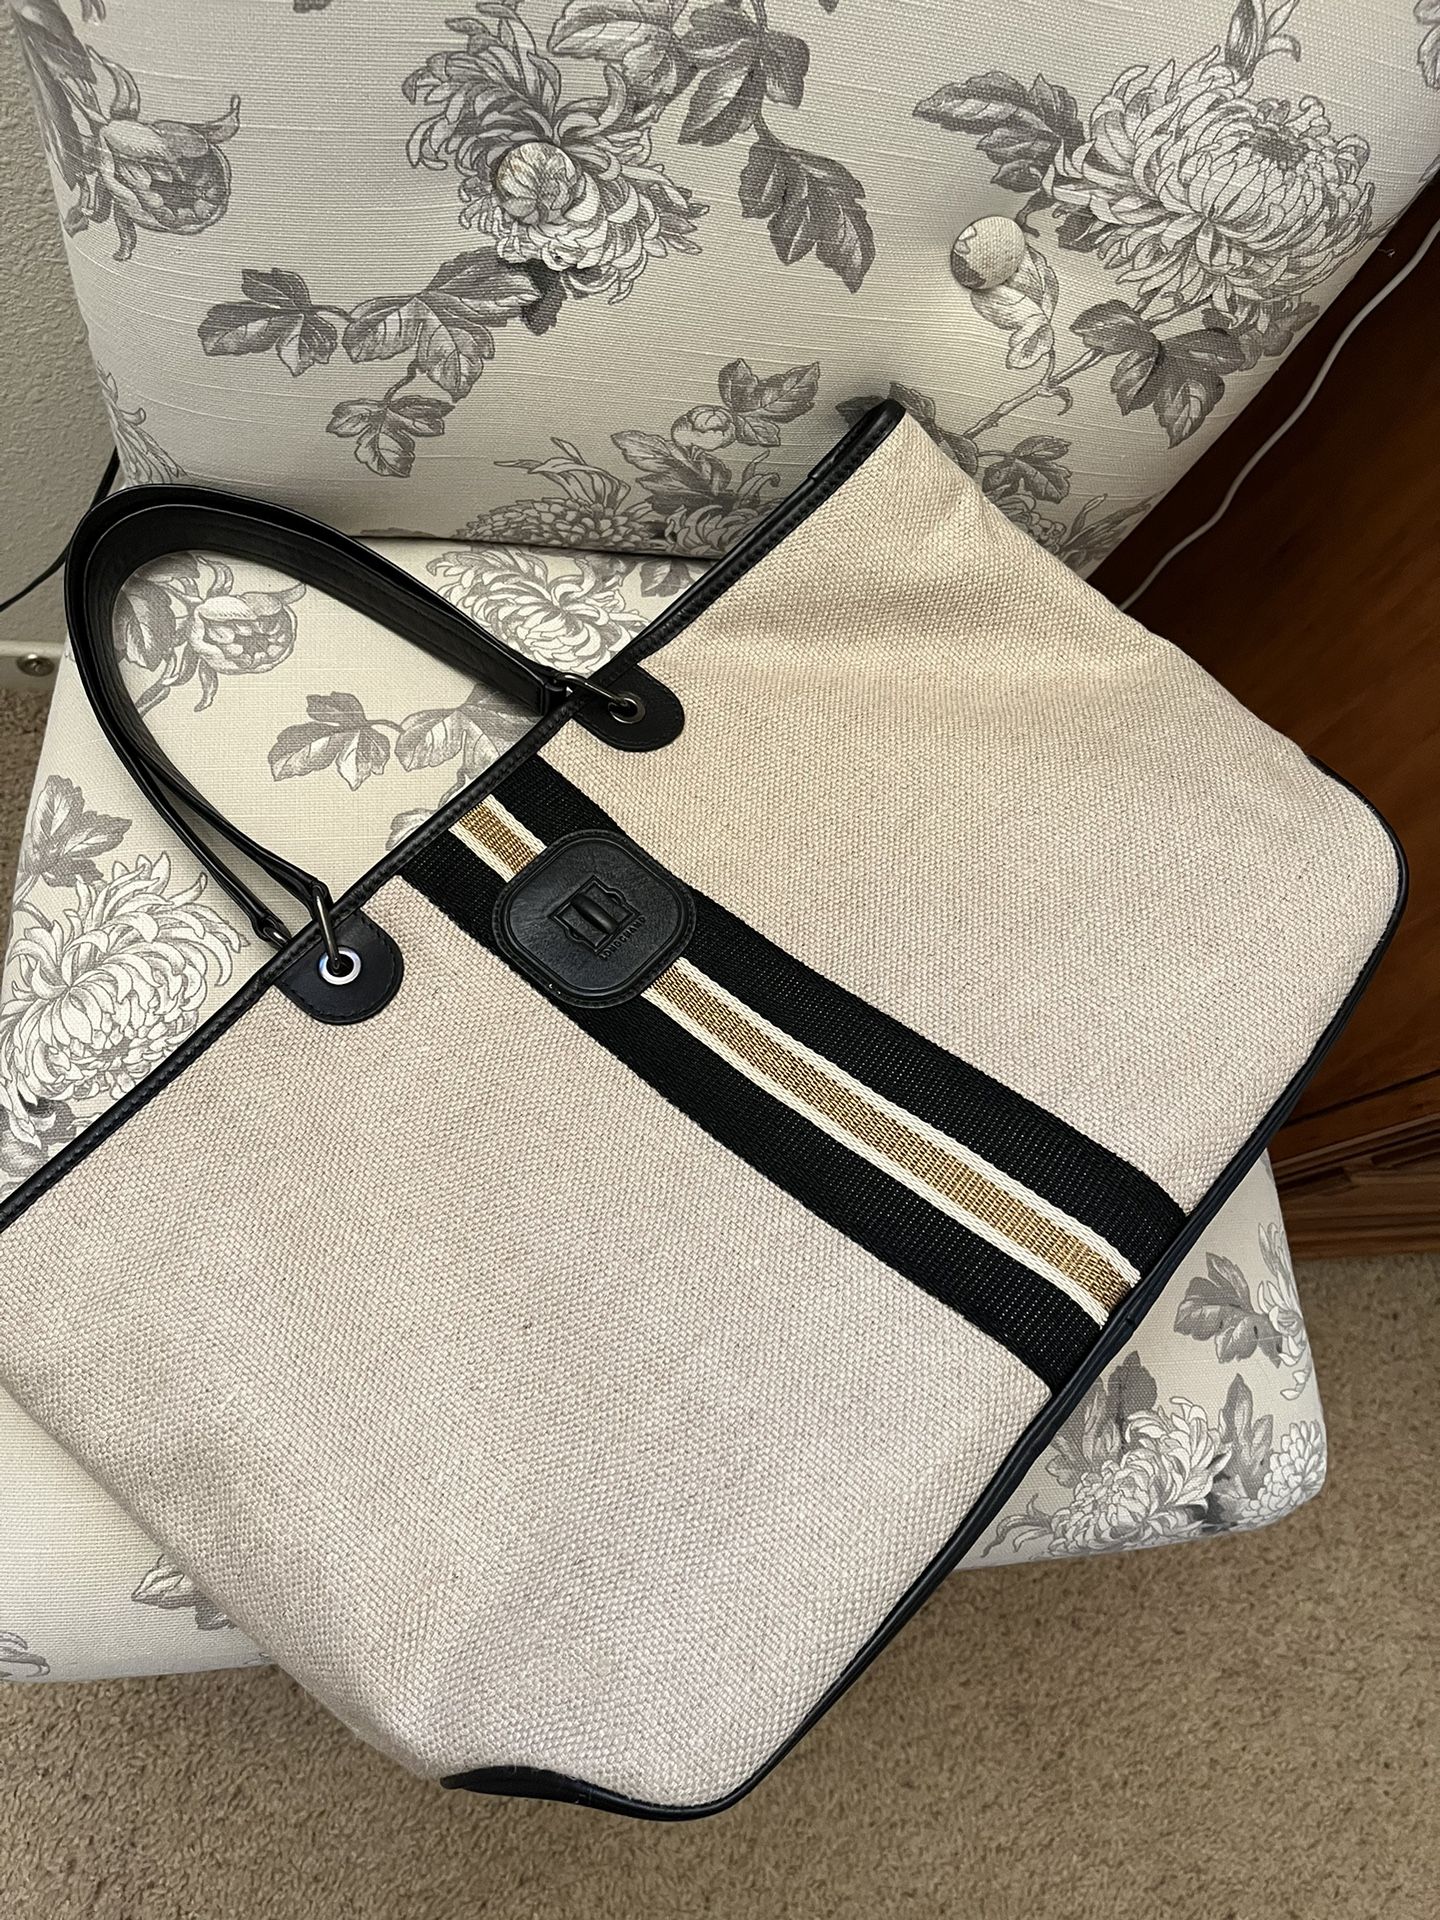 Longchamp Tote Bag